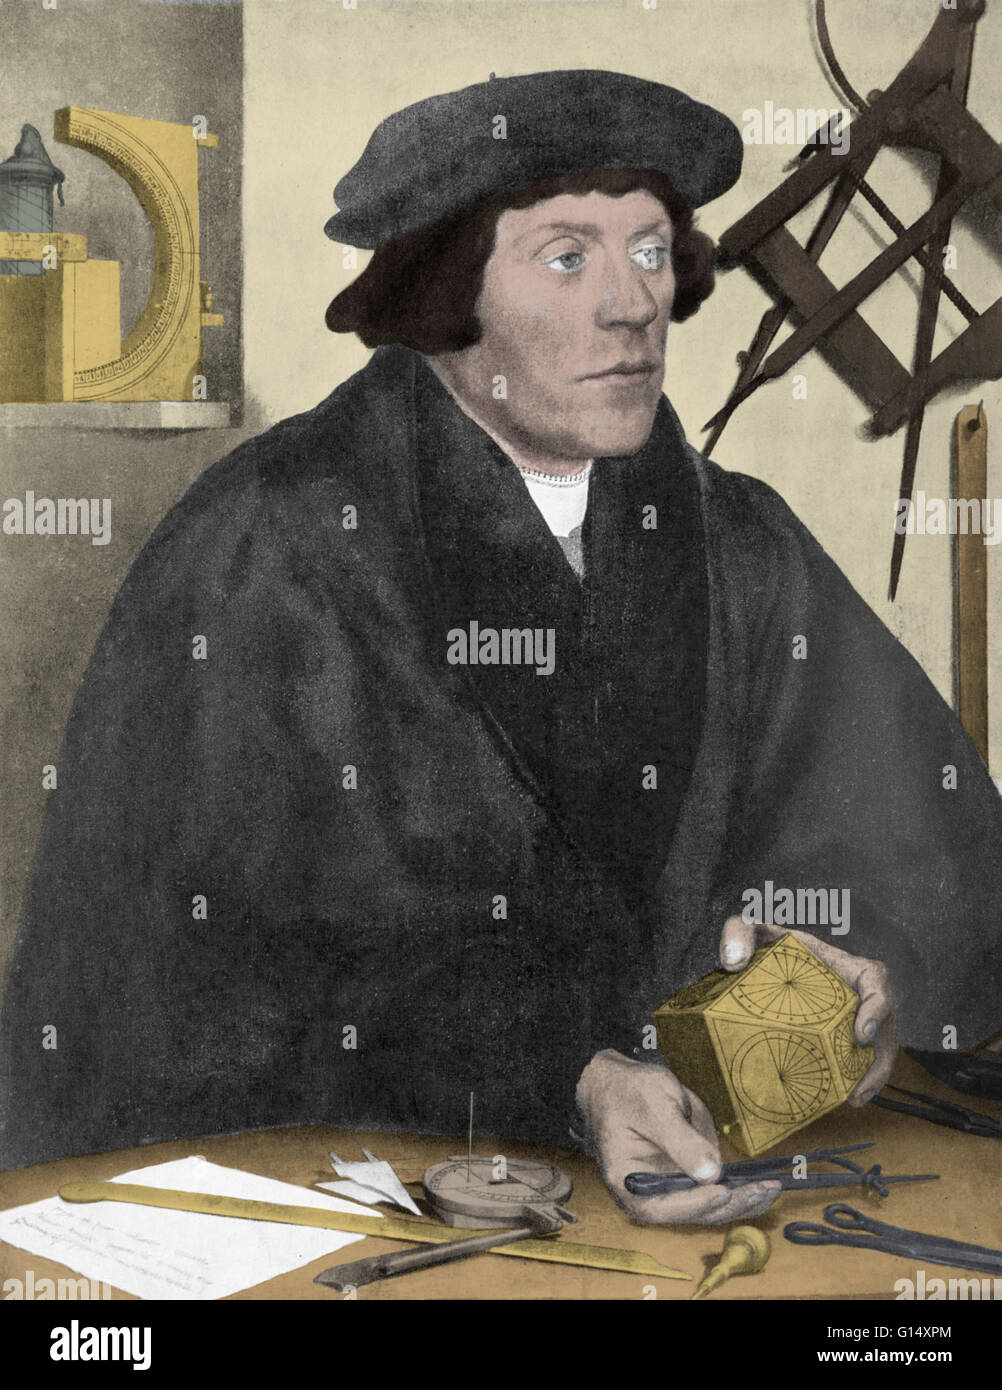 Nicholas Kratzer (1487 - 1550) era un matematico tedesco, astronomo e horologist (lo studio di tempo). Kratzer è venuto in Inghilterra in 1516 e si è stabilito come parte del patrimonio artistico e scientifico cerchio intorno a Sir Thomas More. Egli cresciuti più la chil Foto Stock